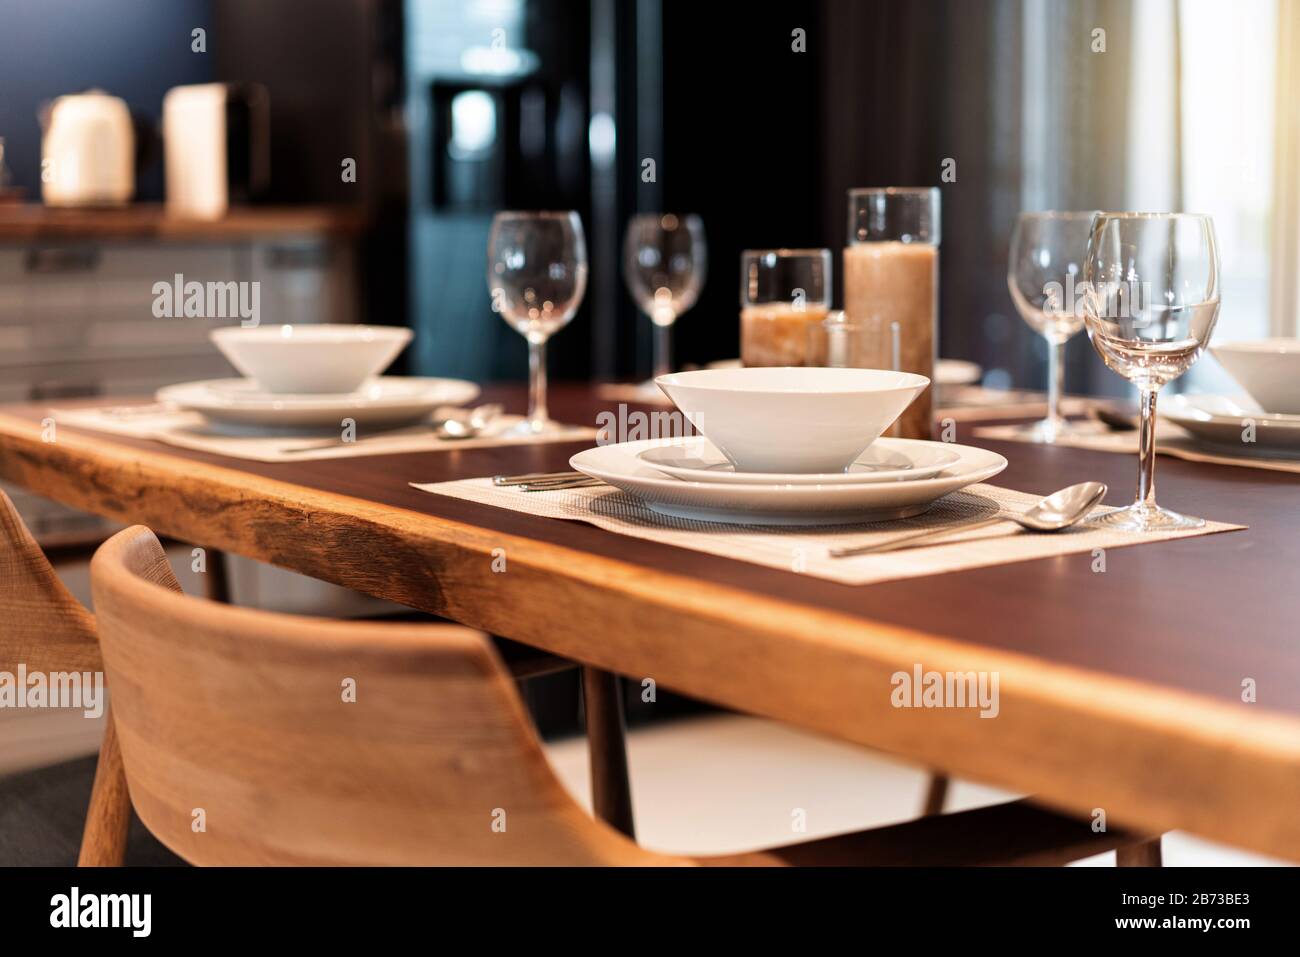 Elegante tavolo da pranzo posto su un tavolo di legno con stoviglie, argenteria, utensile, bicchieri da vino e candele. Tavolo per cene raffinate, pasti di lusso. Foto Stock